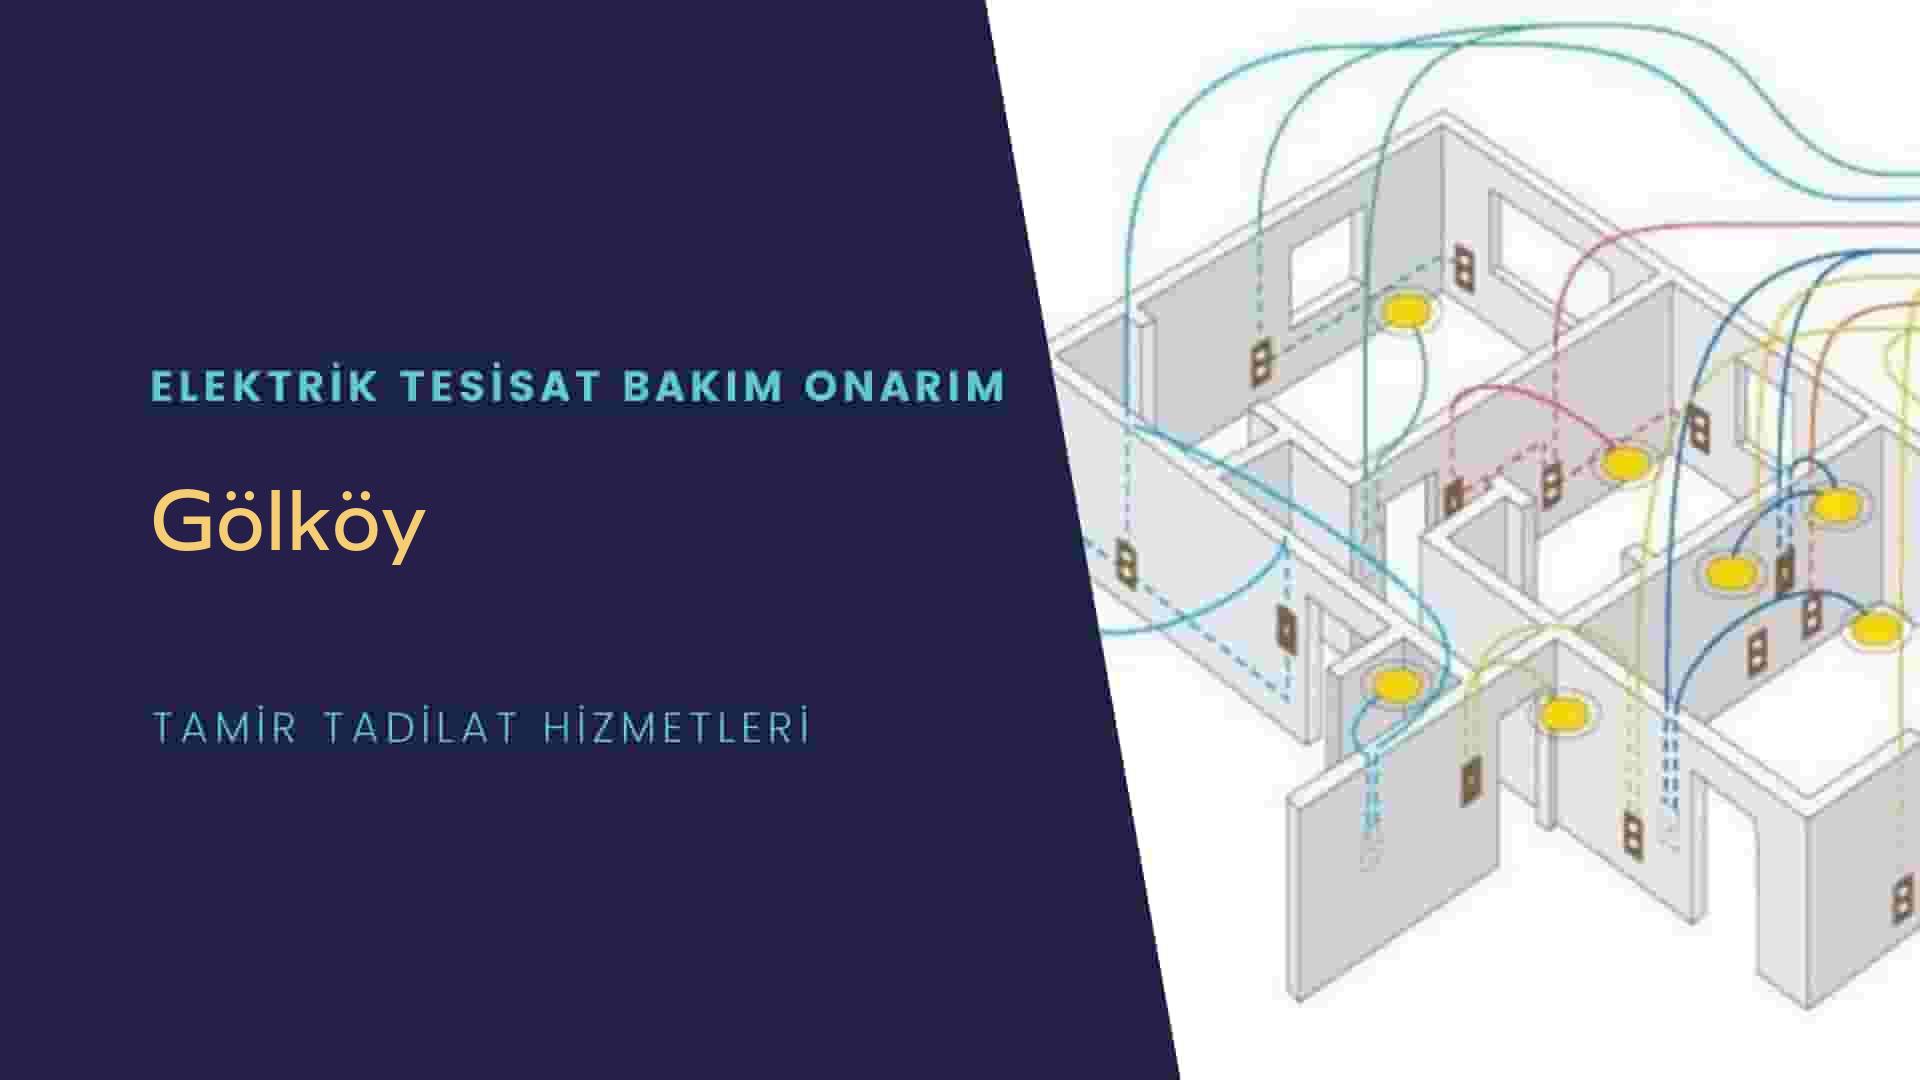 Gölköy'de elektrik tesisatı ustalarımı arıyorsunuz doğru adrestenizi Gölköy elektrik tesisatı ustalarımız 7/24 sizlere hizmet vermekten mutluluk duyar.